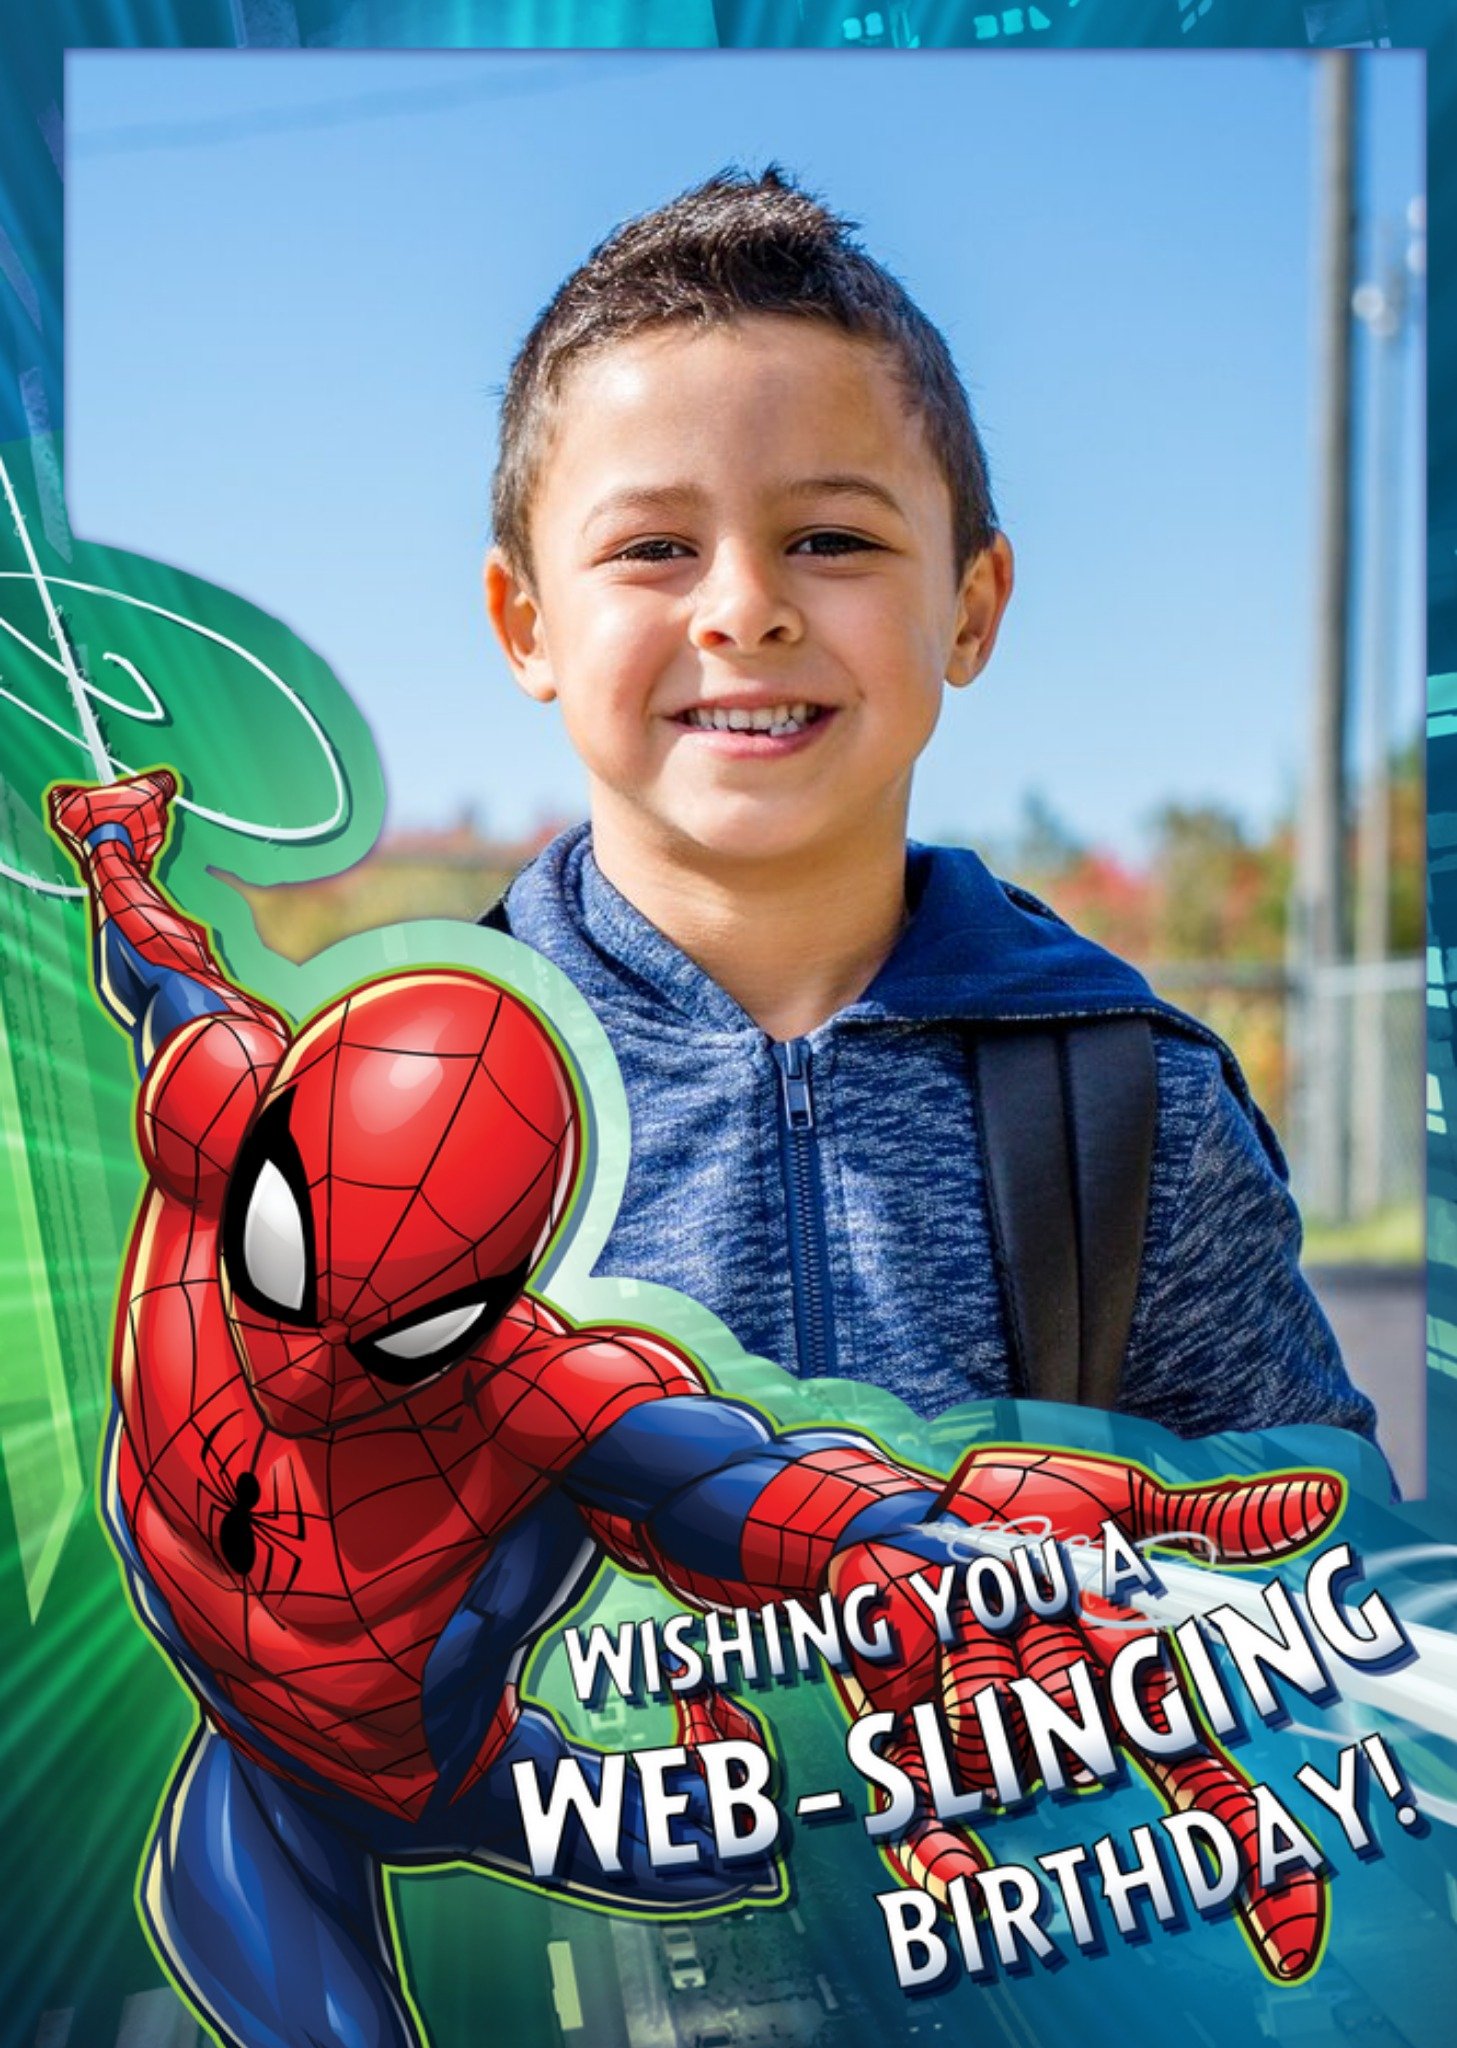 Disney Marvel Spiderman Web-Slinging Photo Upload Birthday Card, Large